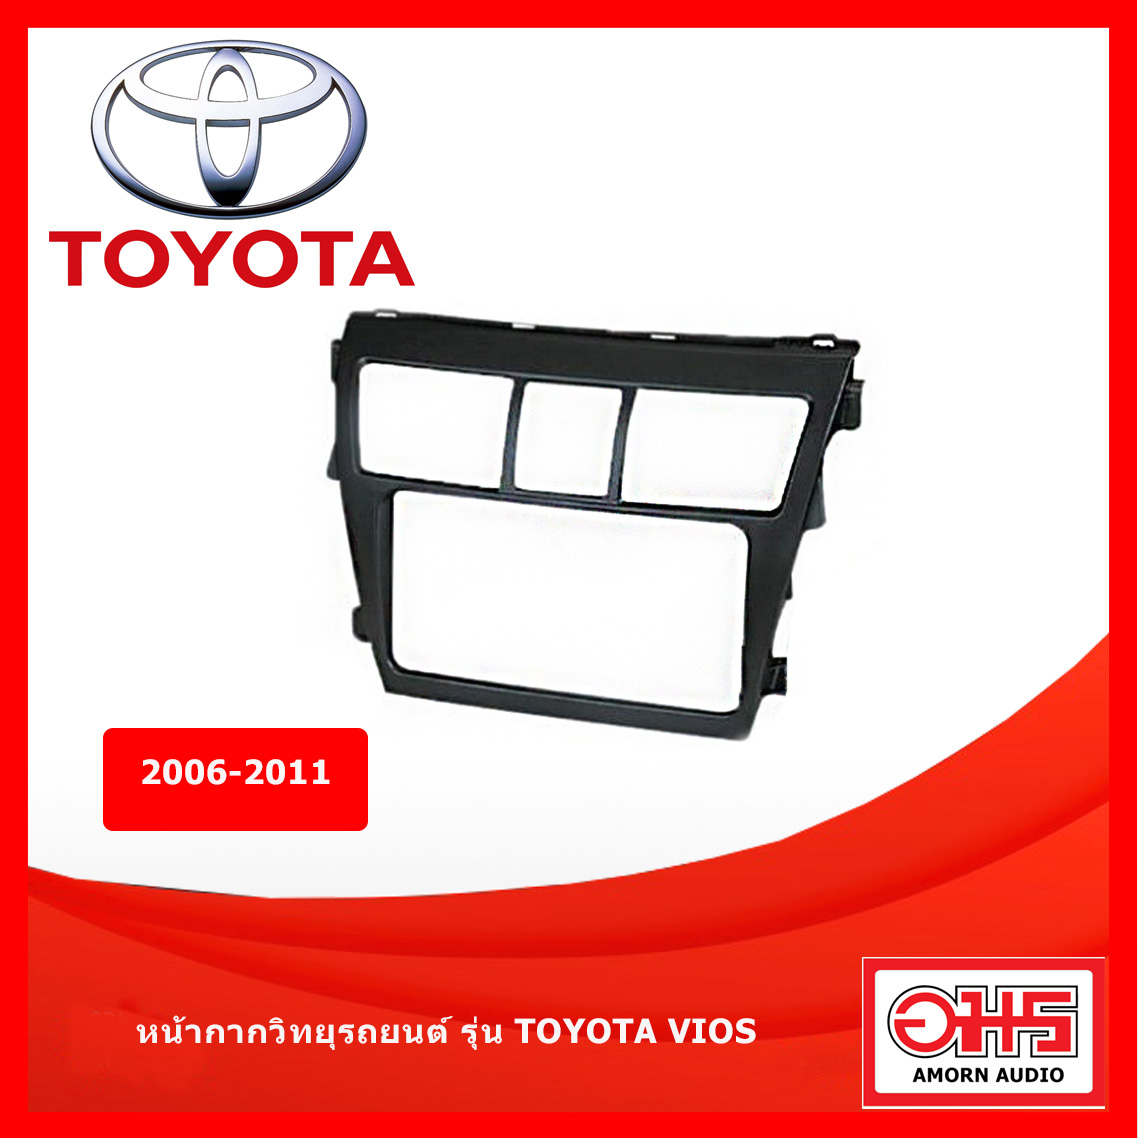 หน้ากากวิทยุ รถยนต์ TOYOTA รุ่น VIOS ปี 2006-2011 - BLACK - ดำ AMORNAUDIO อมรออดิโอ